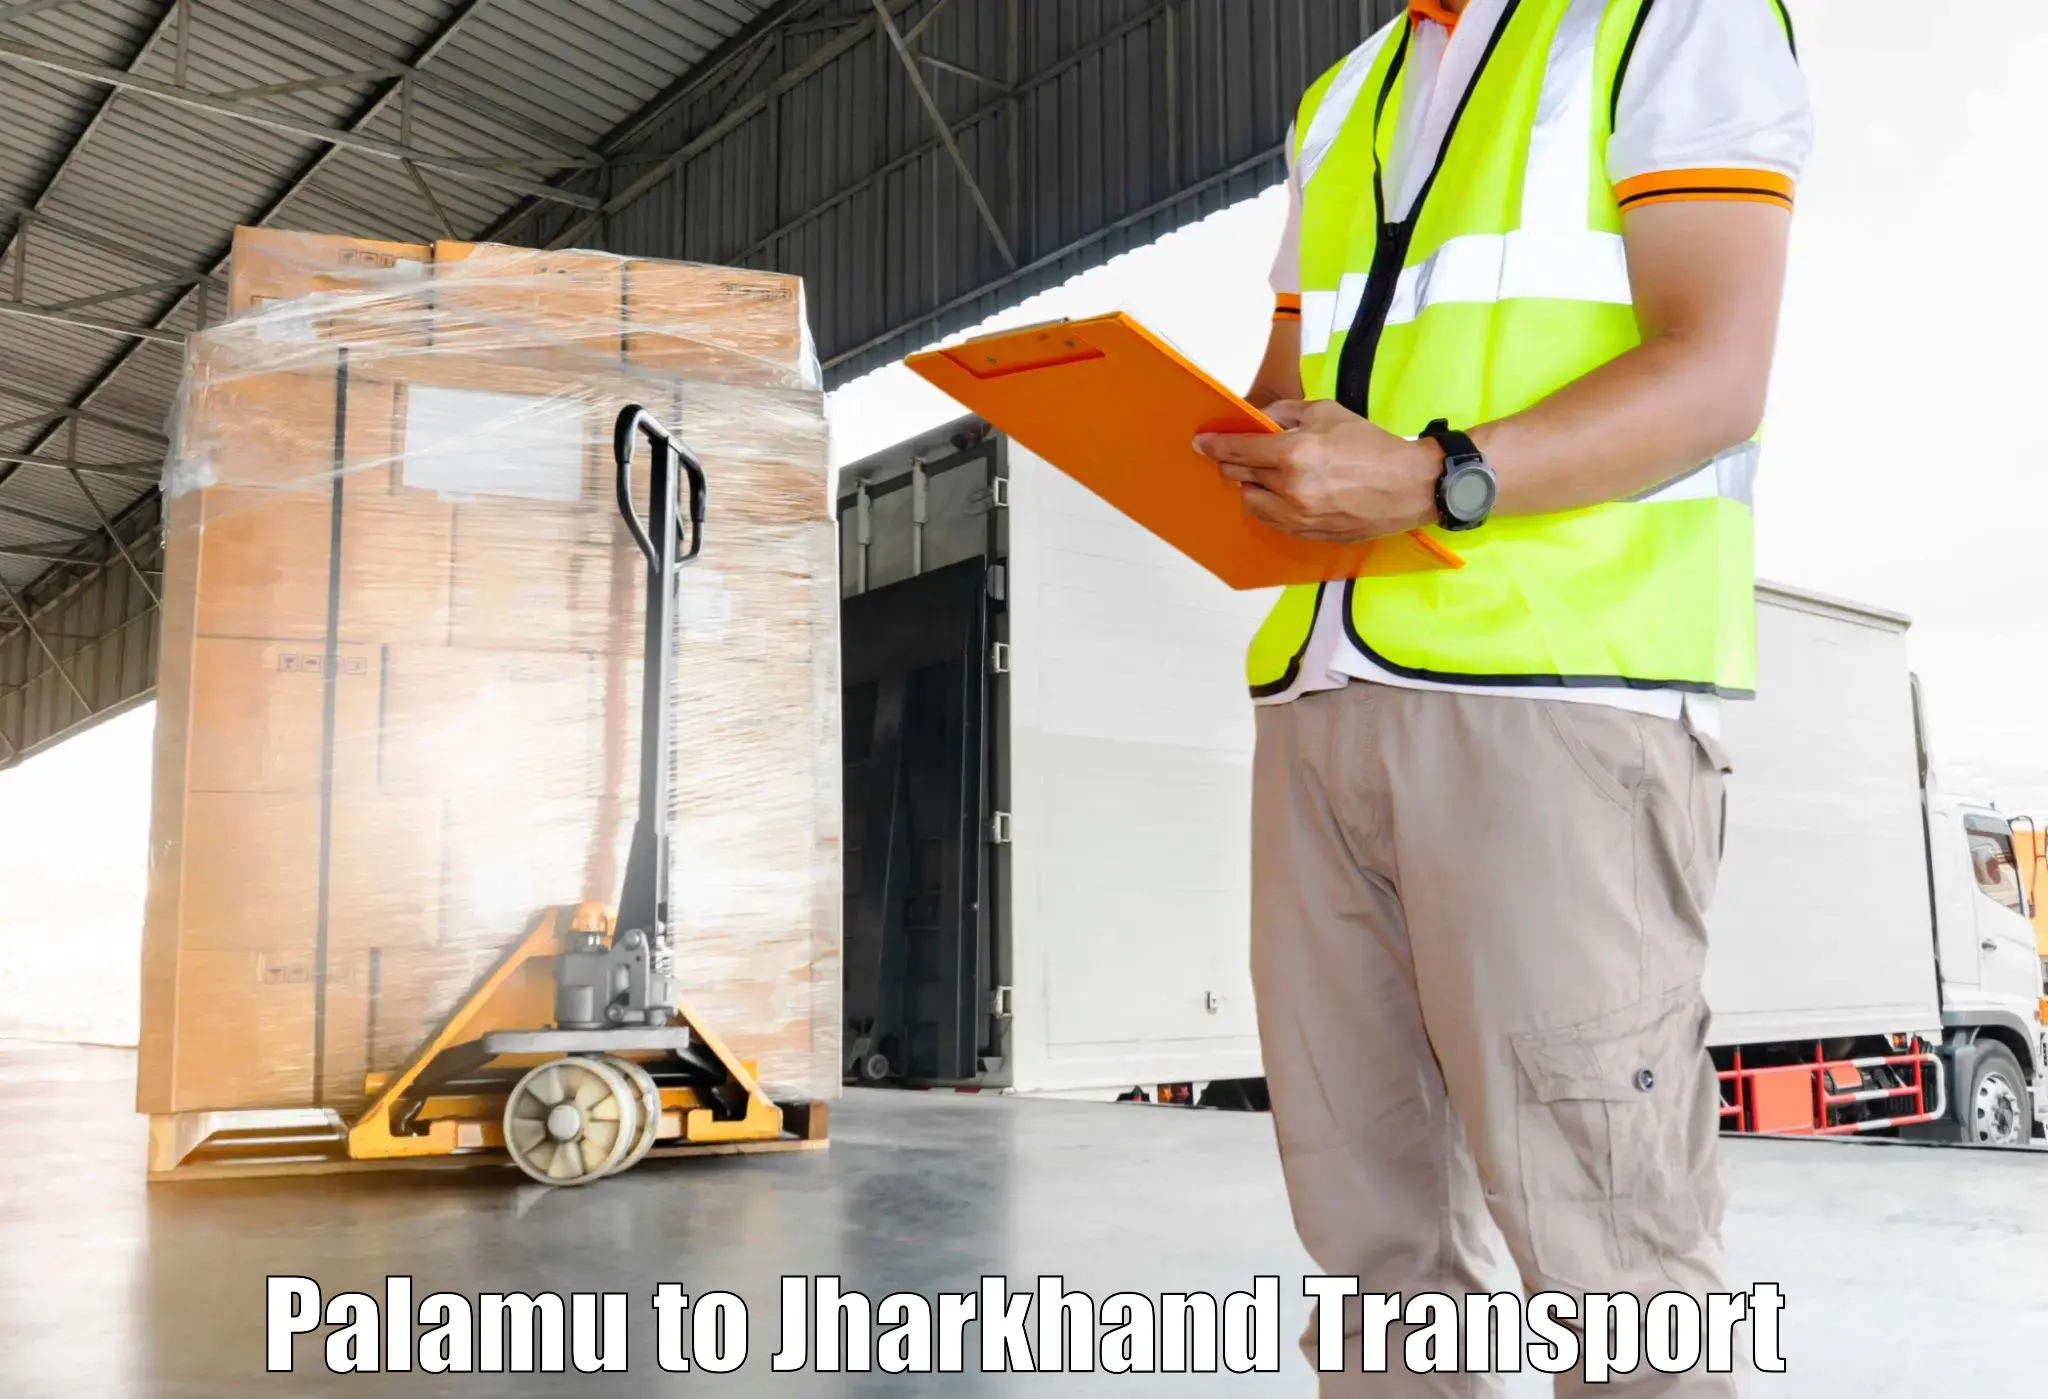 Pick up transport service Palamu to Tandwa